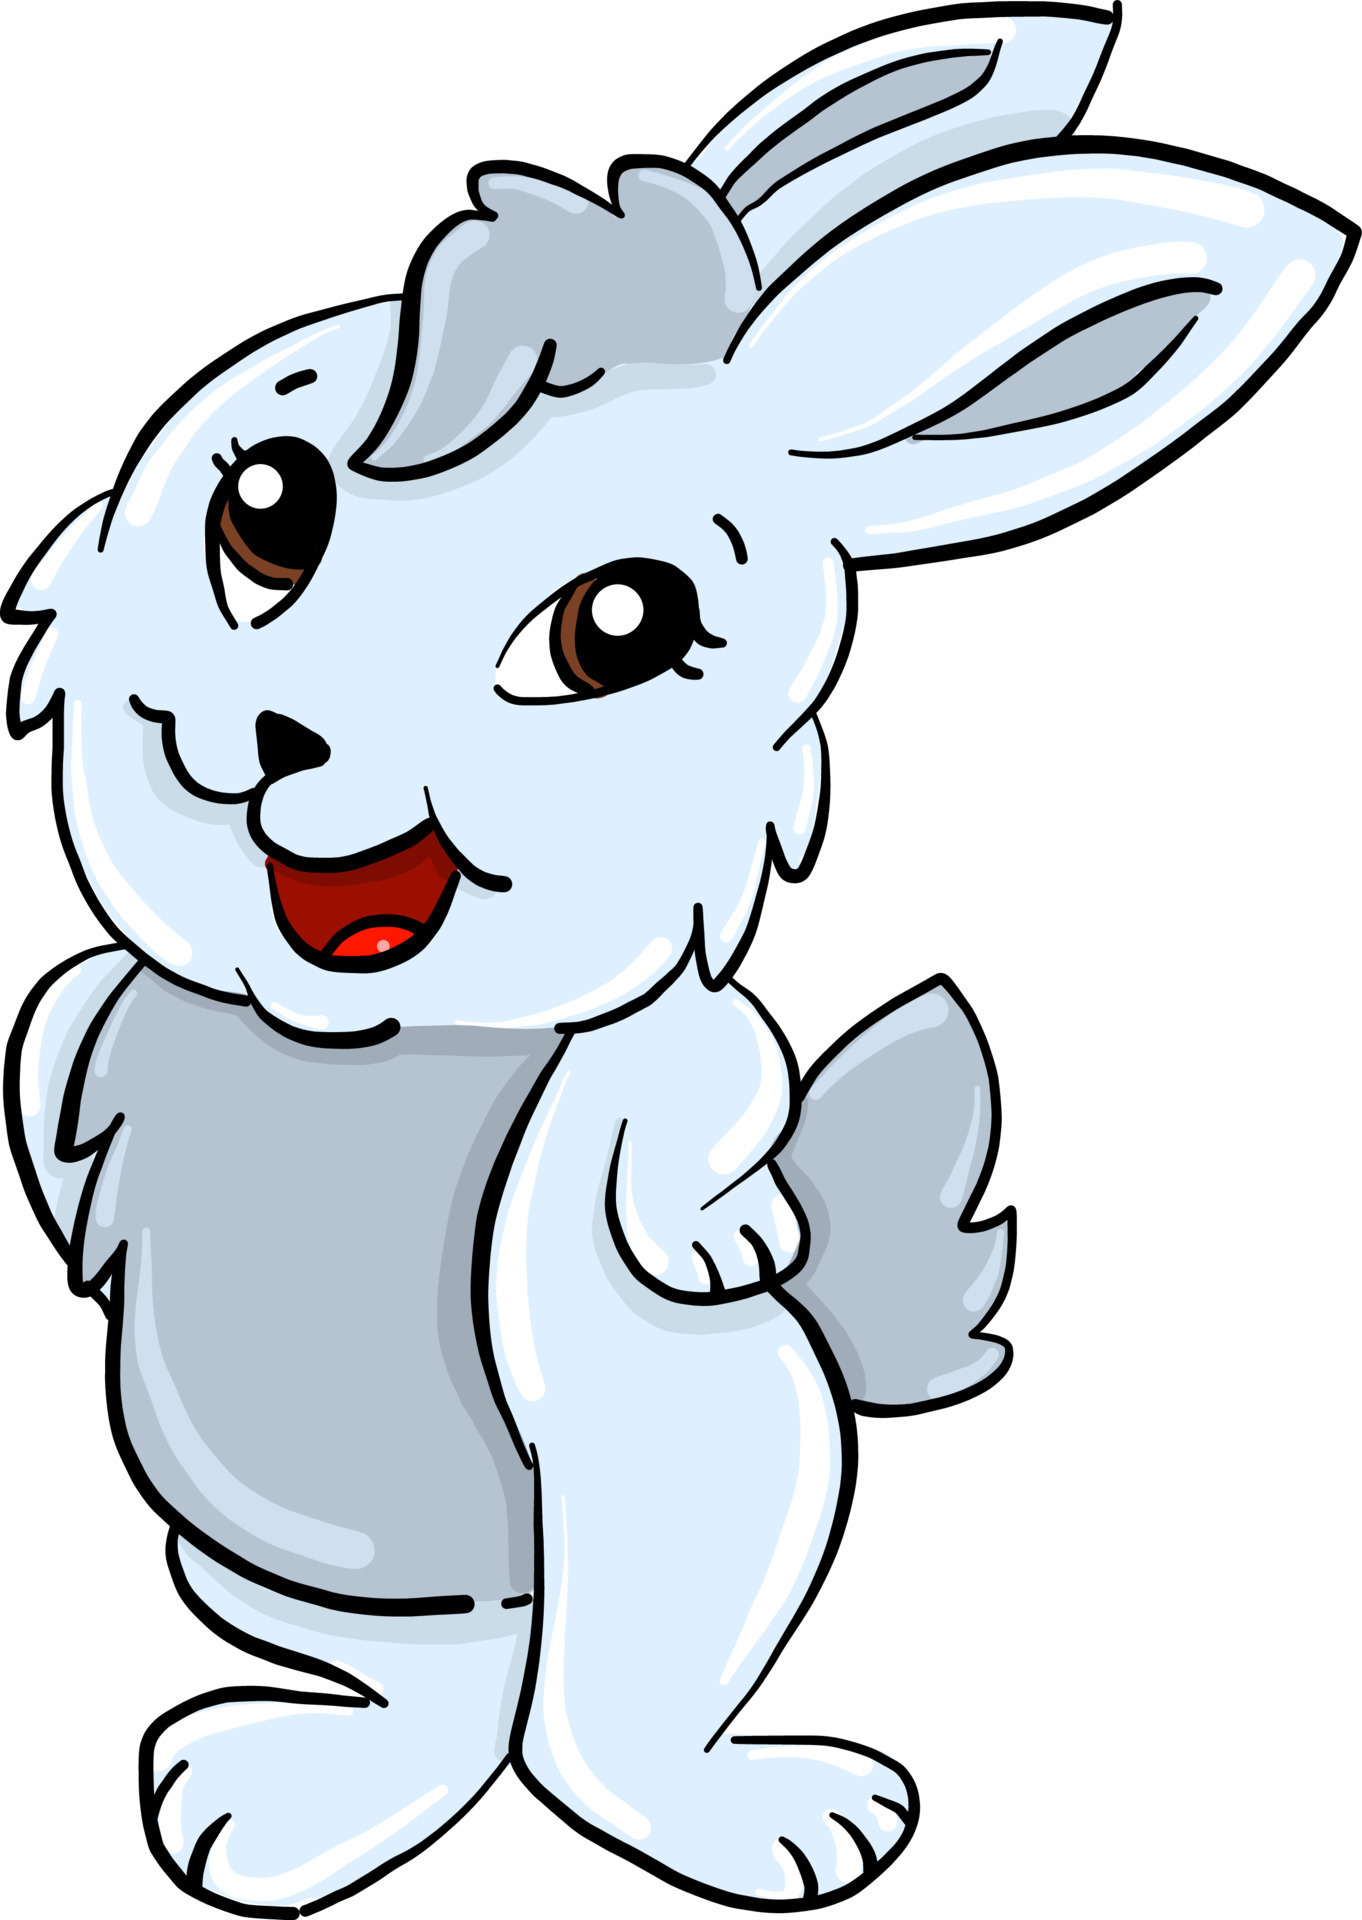 Con thỏ hài hước đang chờ bạn trong các hình ảnh dễ thương và vui nhộn của chúng tôi. Hãy cùng cười đùa với những trò khôi hài của con thỏ này.